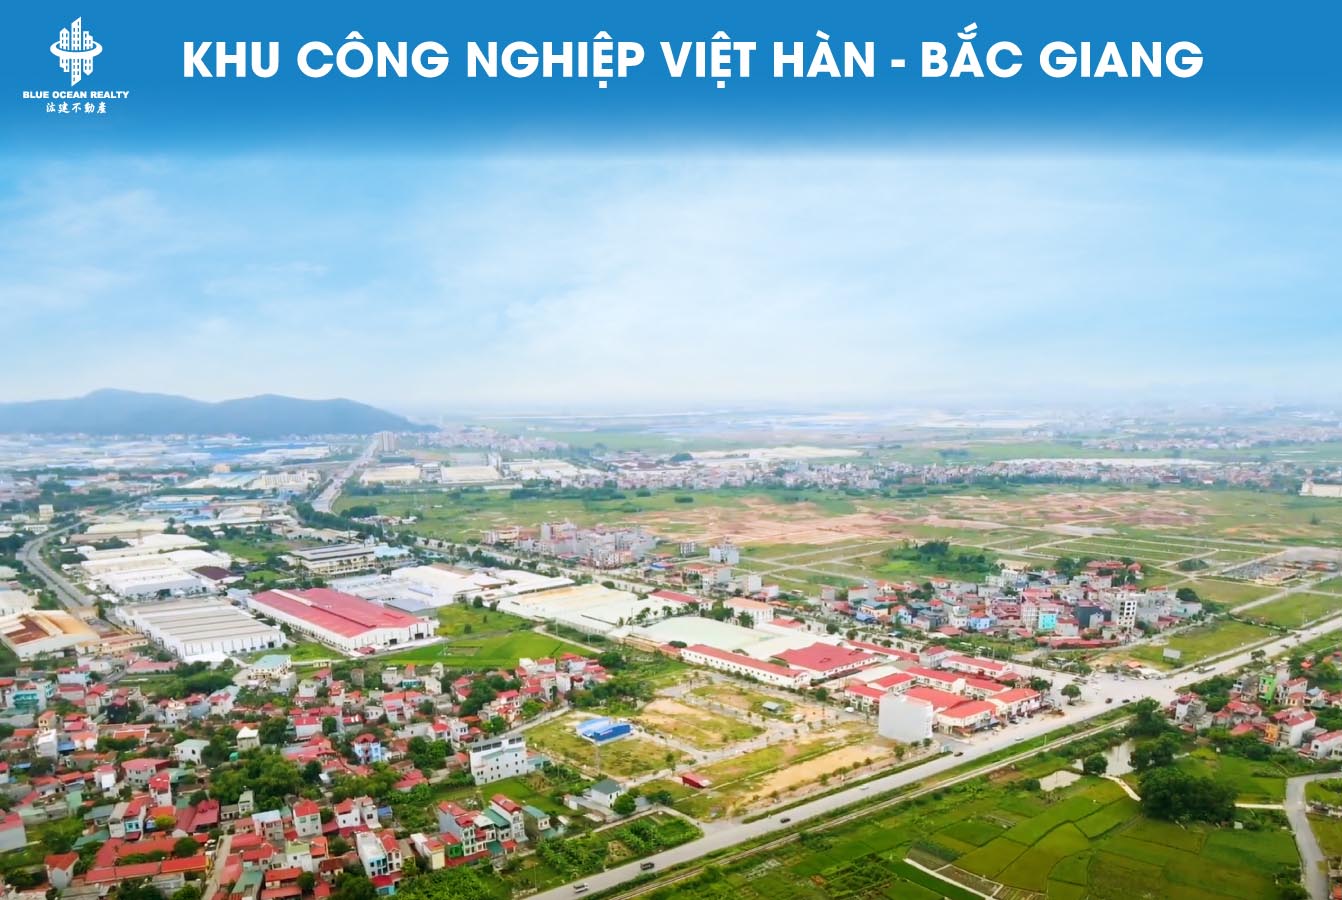 Khu công nghiệp (KCN) Việt Hàn tỉnh Bắc Giang